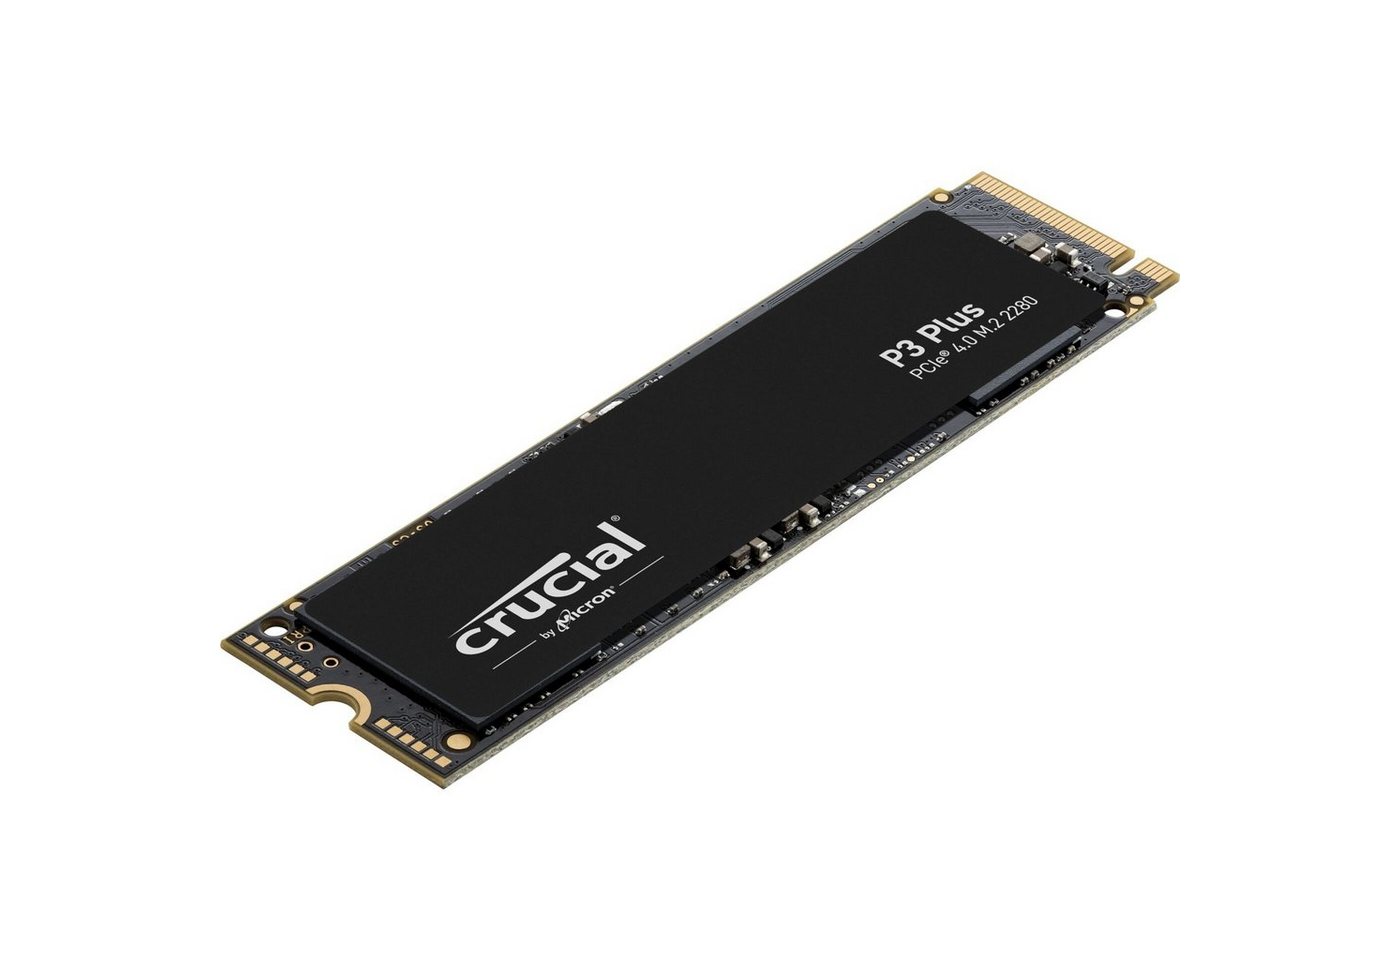 Crucial P3 Plus NVMe PCIe 3.0 5000MB/s schreiben interne SSD von Crucial